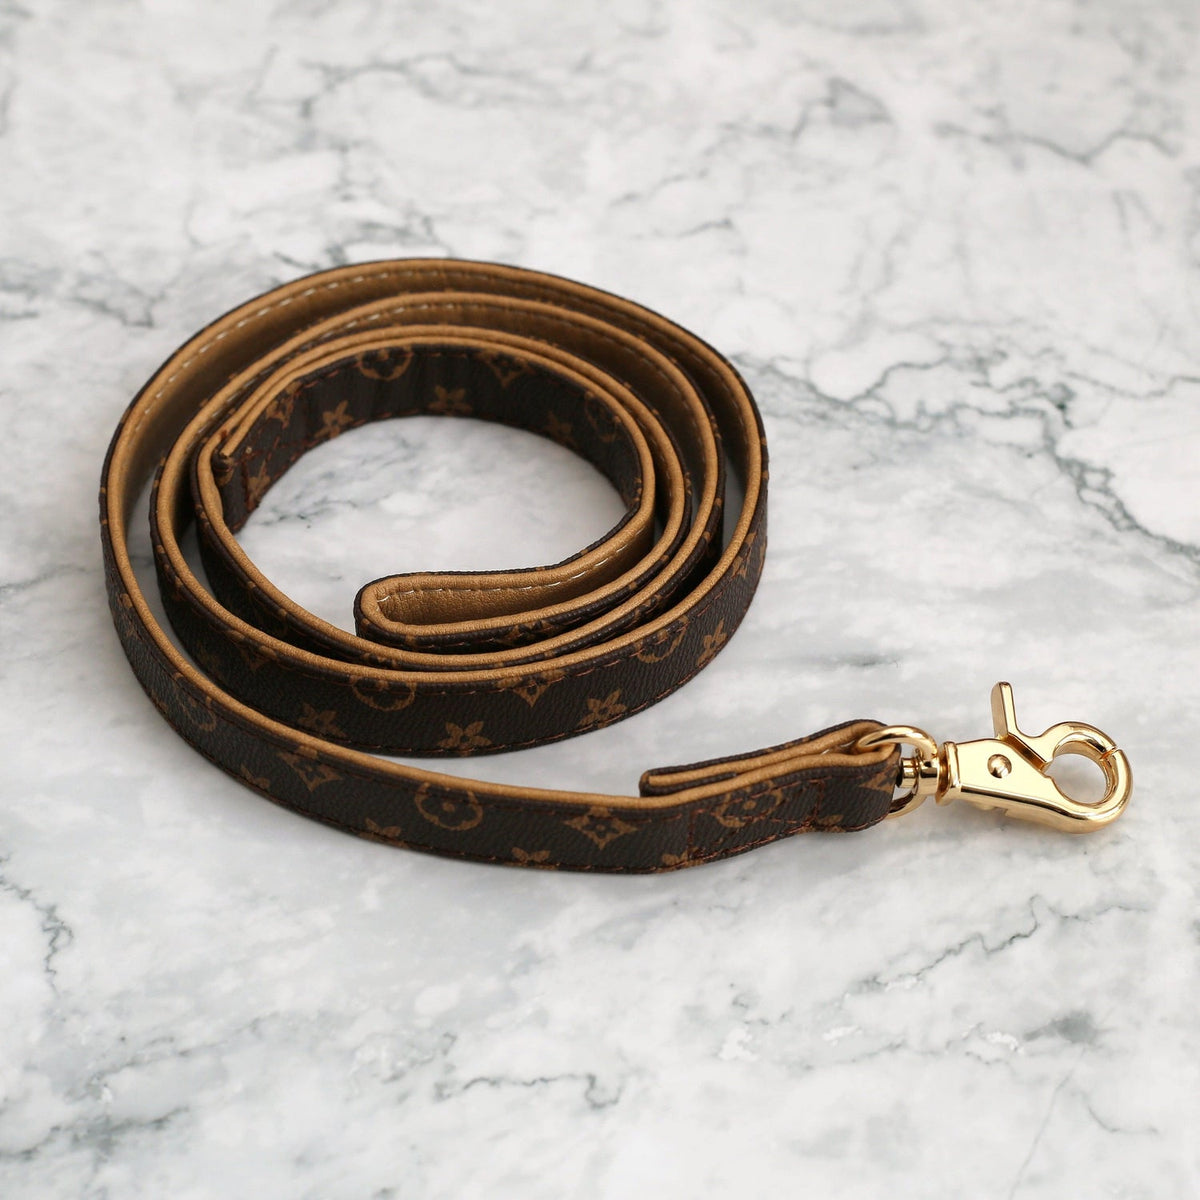 Premium Vintage Leather Dog Leash